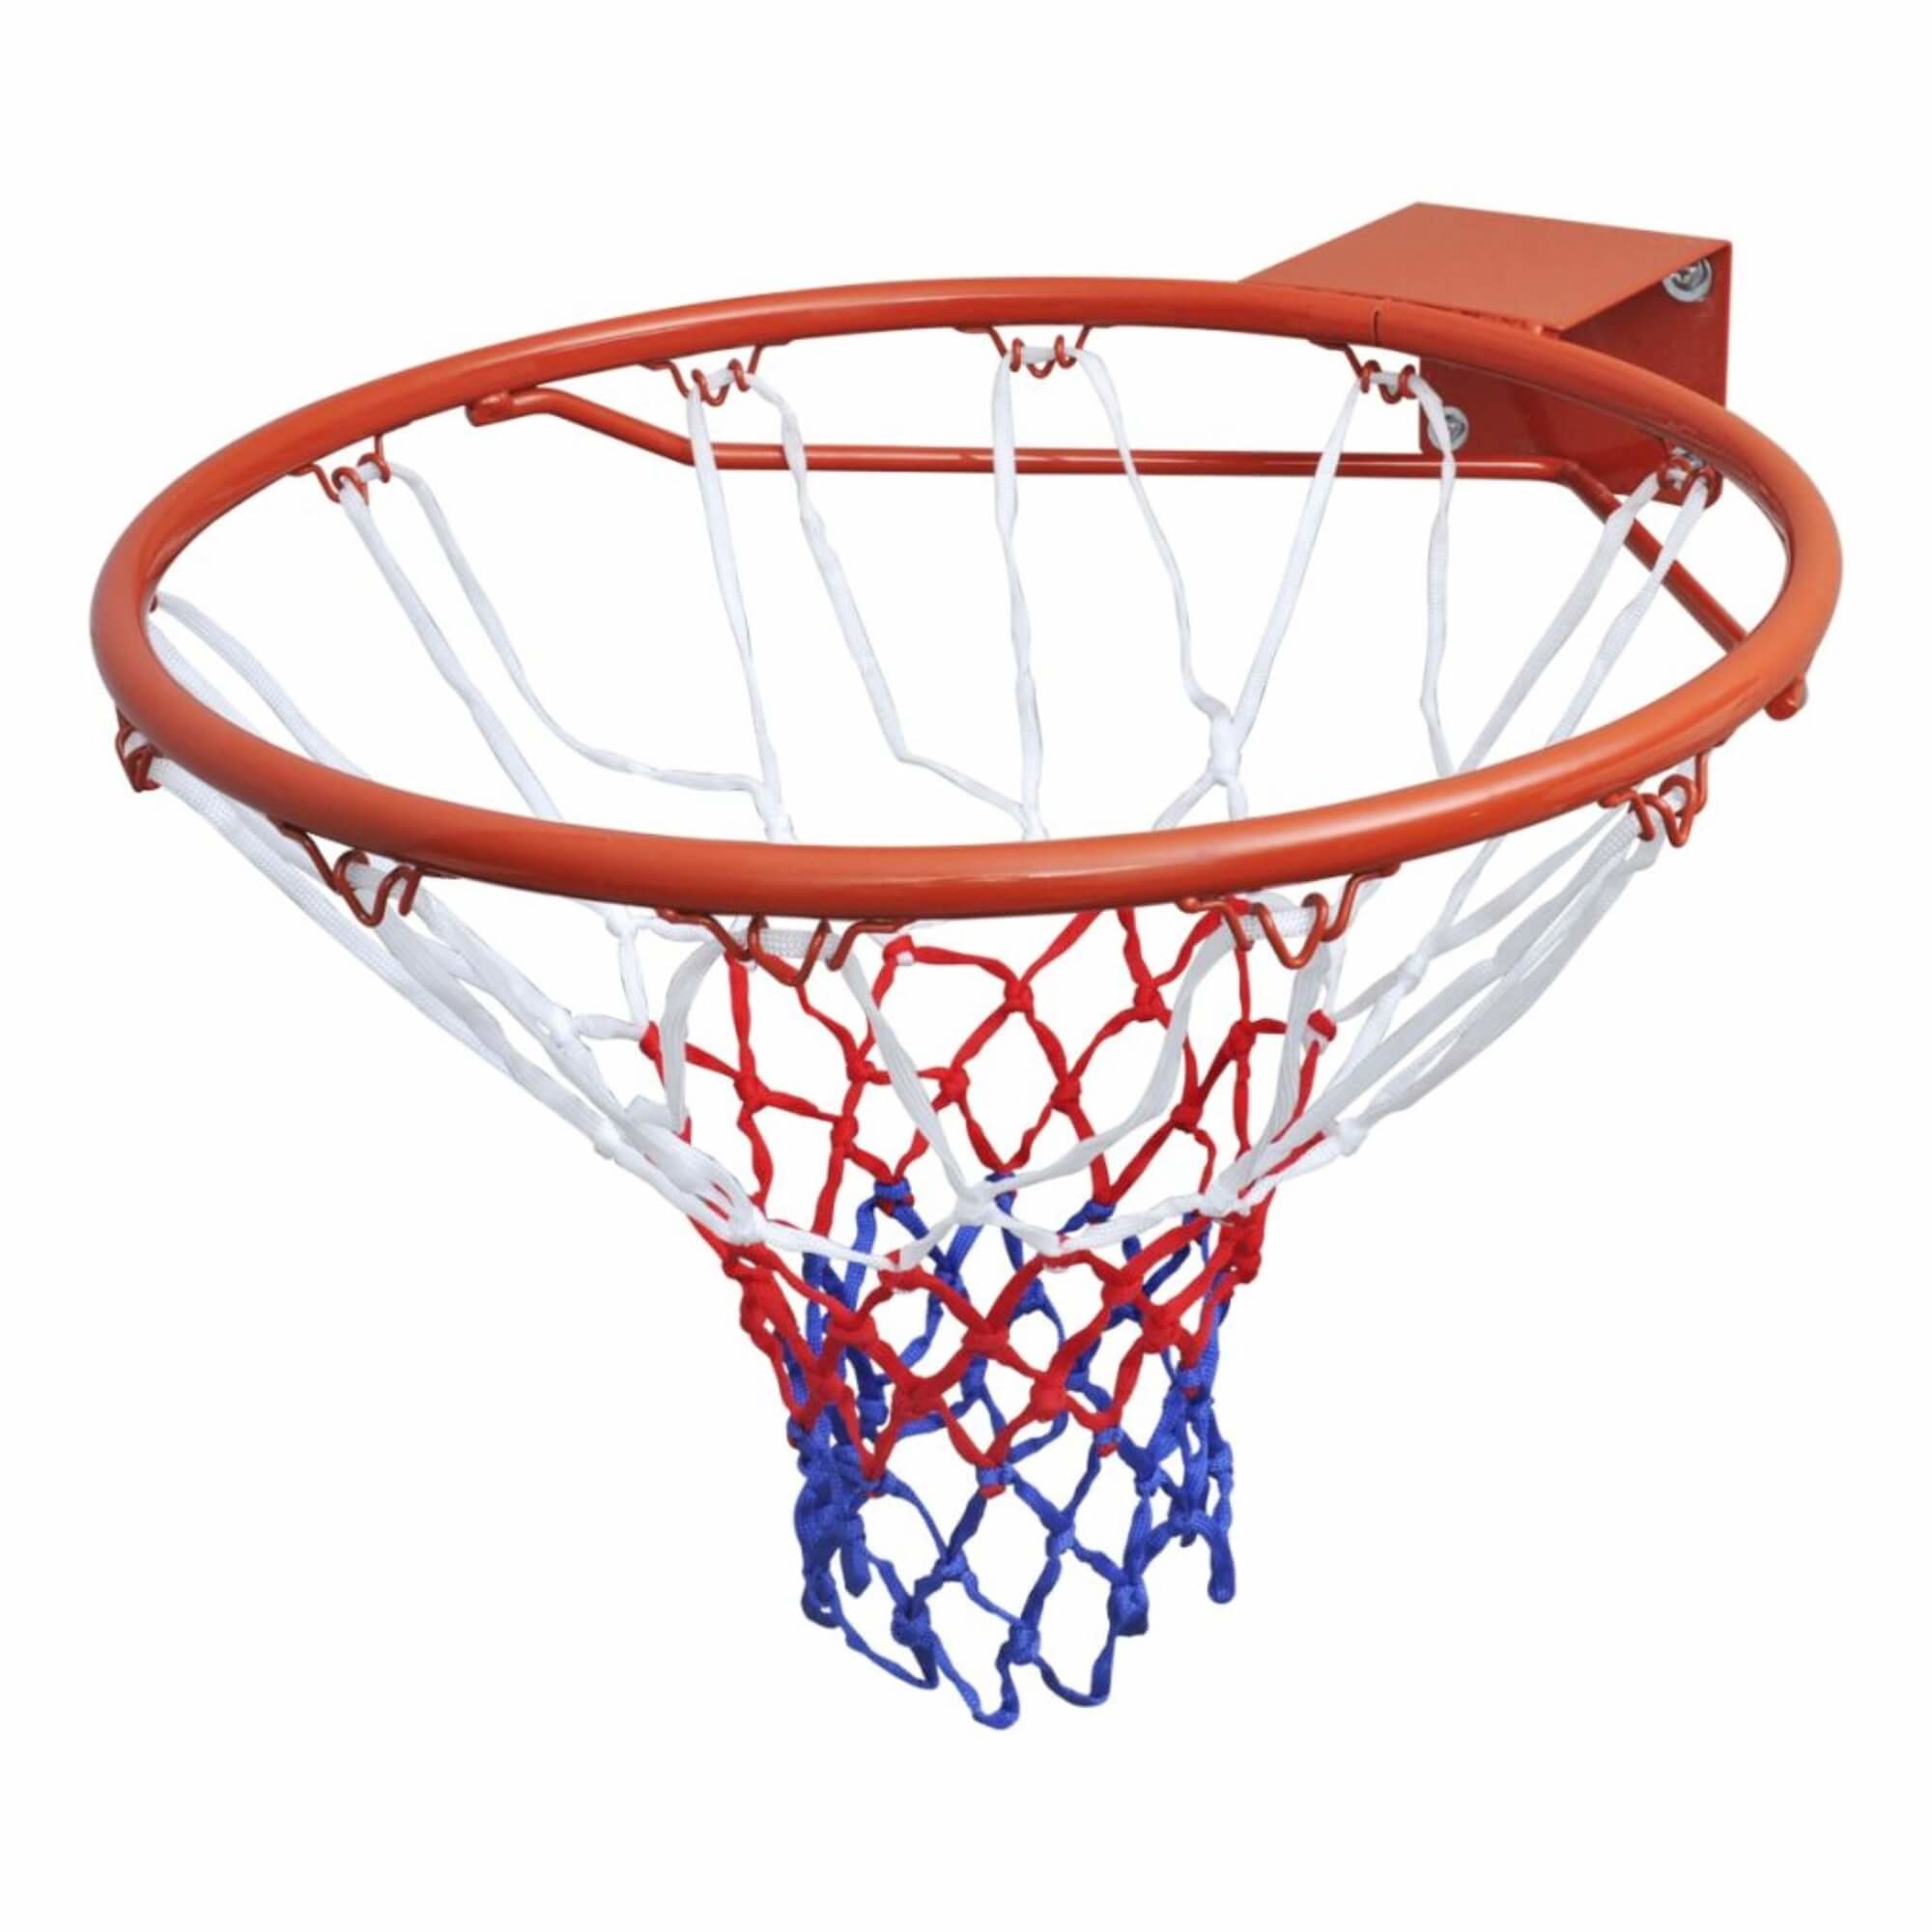 Fabel ontploffing abortus Dunlop Basketbalkorf / Basketbal ring 45cm + net (Oranje) kopen? - 2Cheap